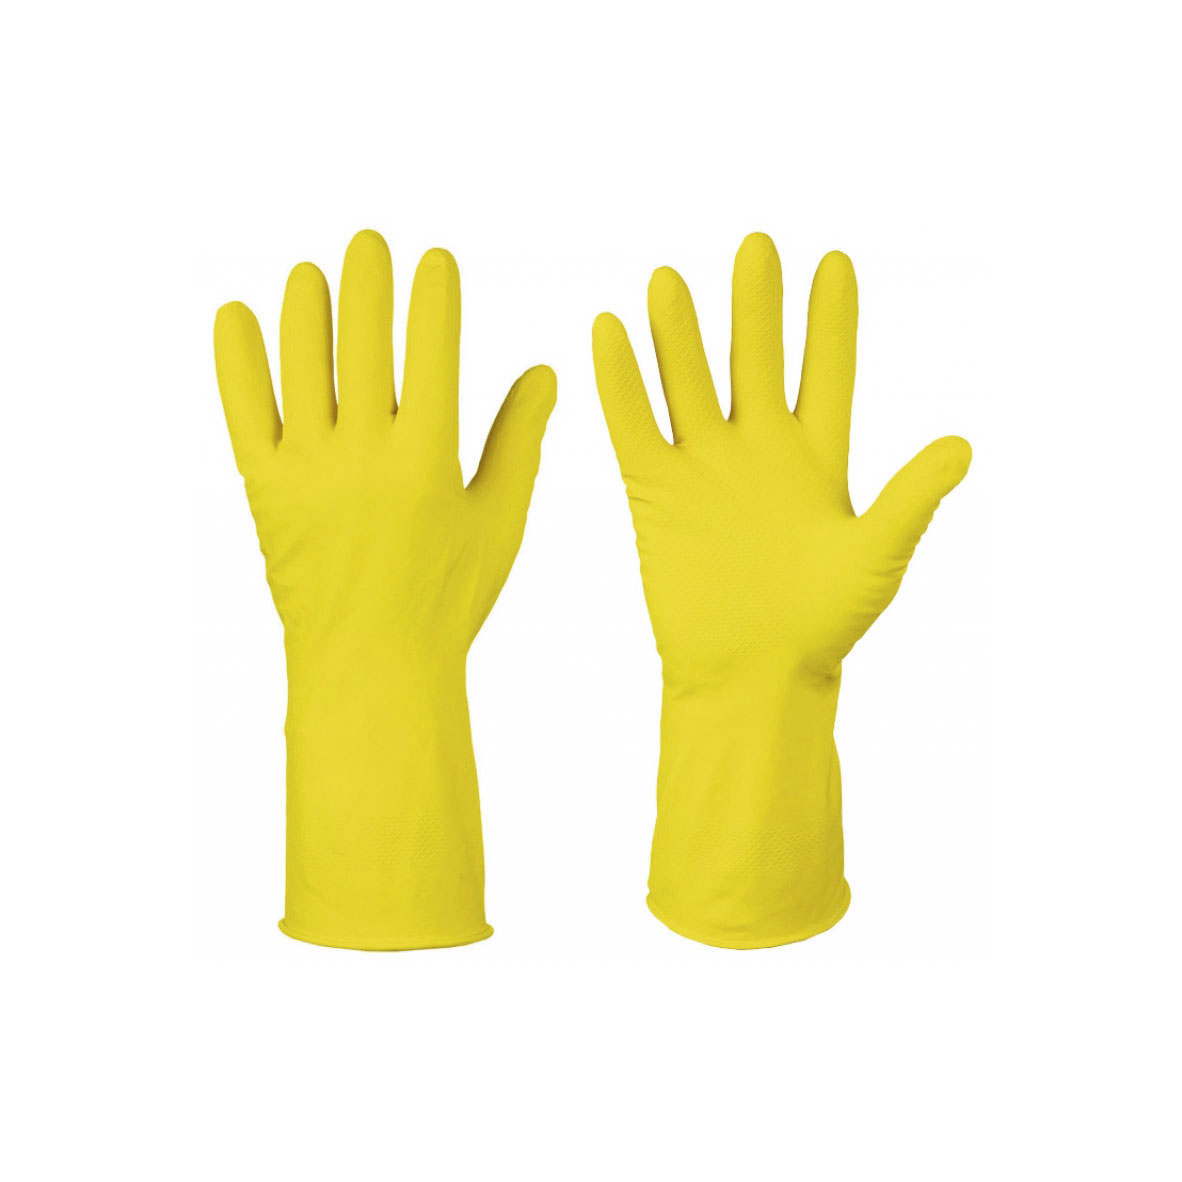 Перчатки хозяйственные латексные, с хлопковым напылением, разм.S, желтые, (упак. 1 пара)